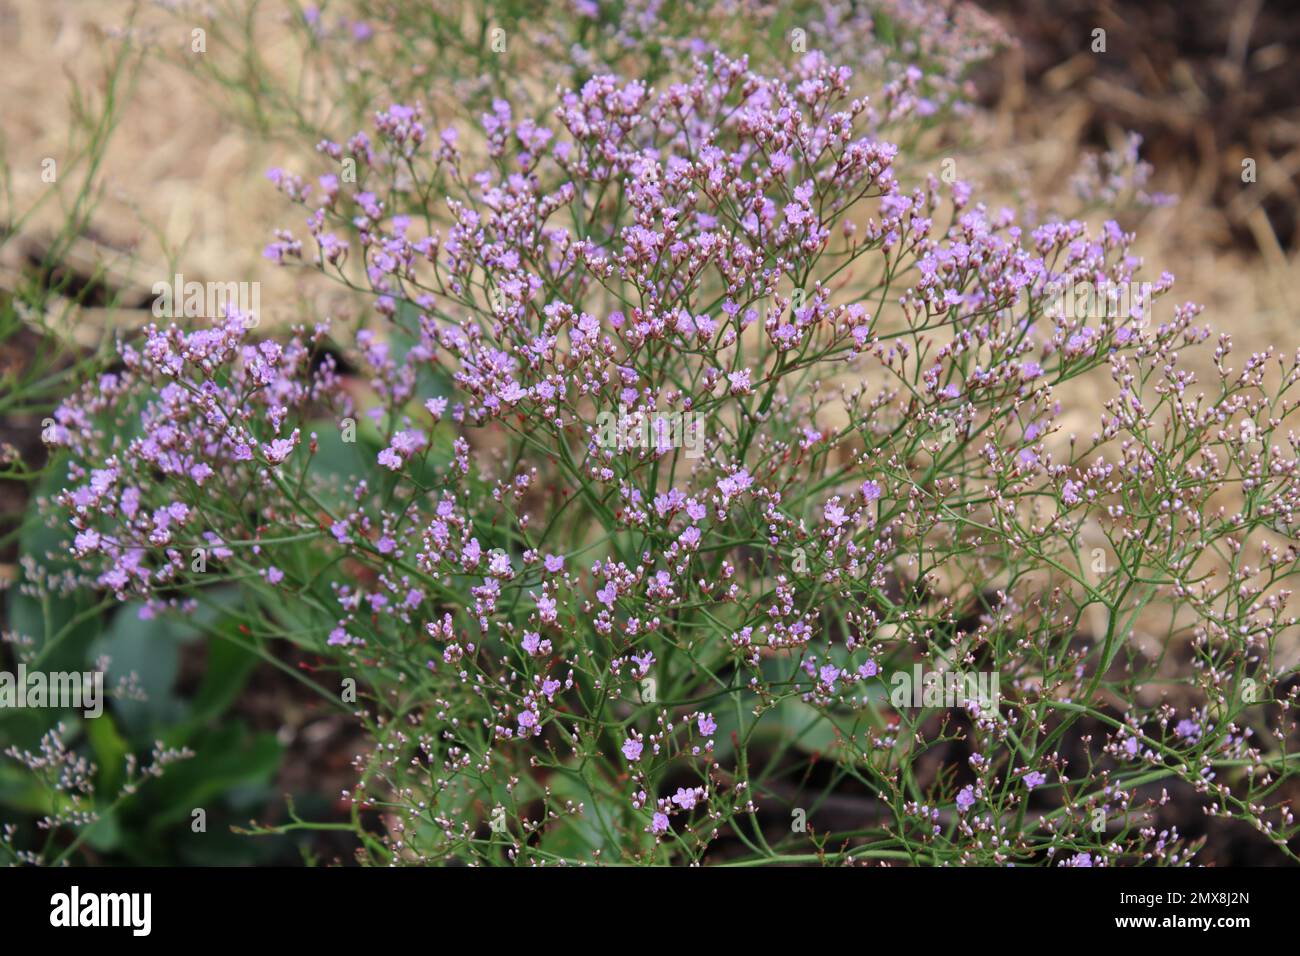 Sea Lavender (Limonium latifolium) in garden. Stock Photo